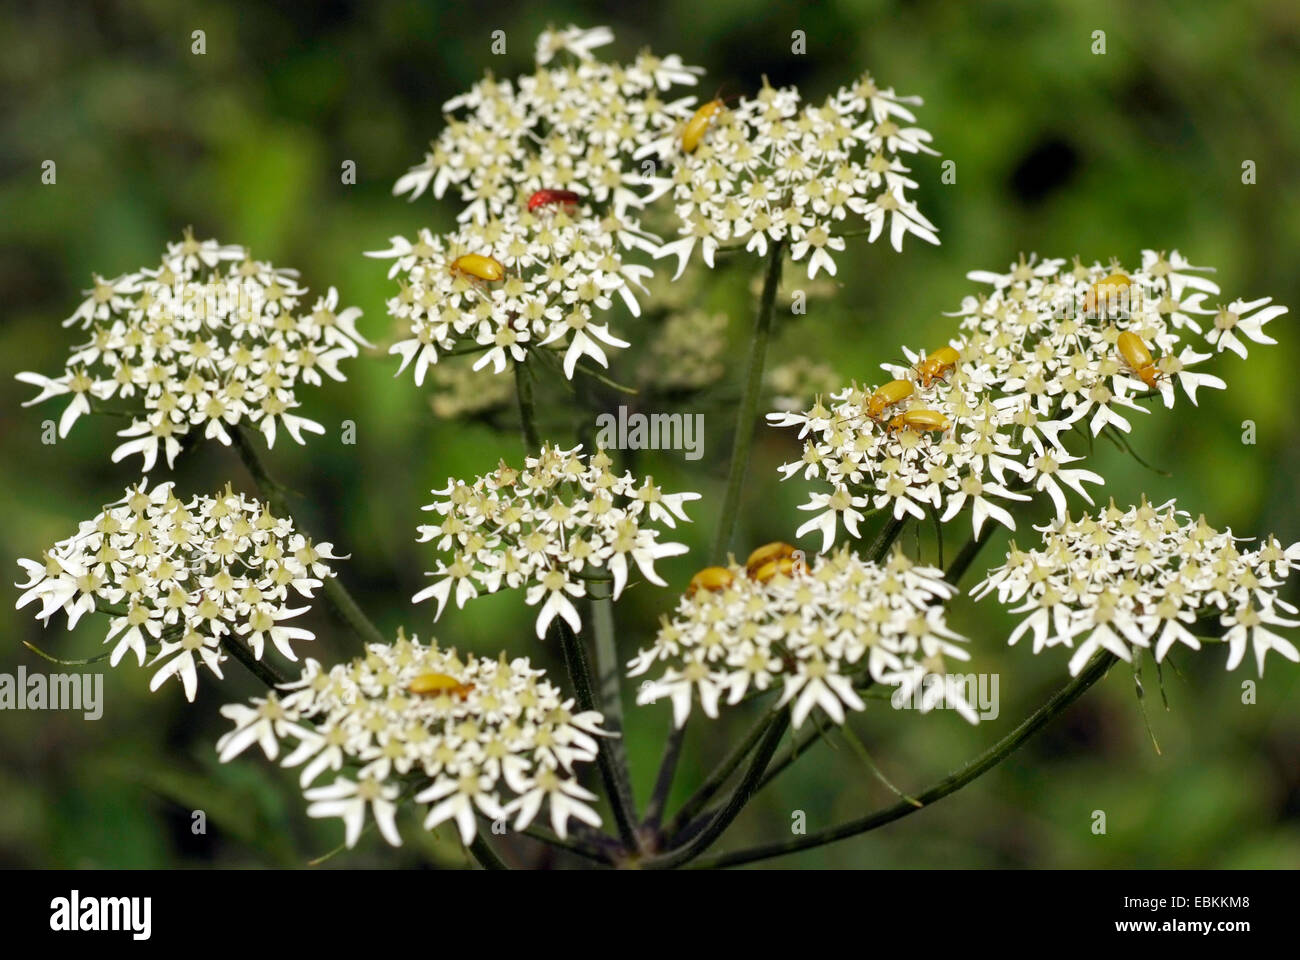 sulphur beetle (Cteniopus flavus), many Sulphur beetles on umbellifer flower, Germany Stock Photo